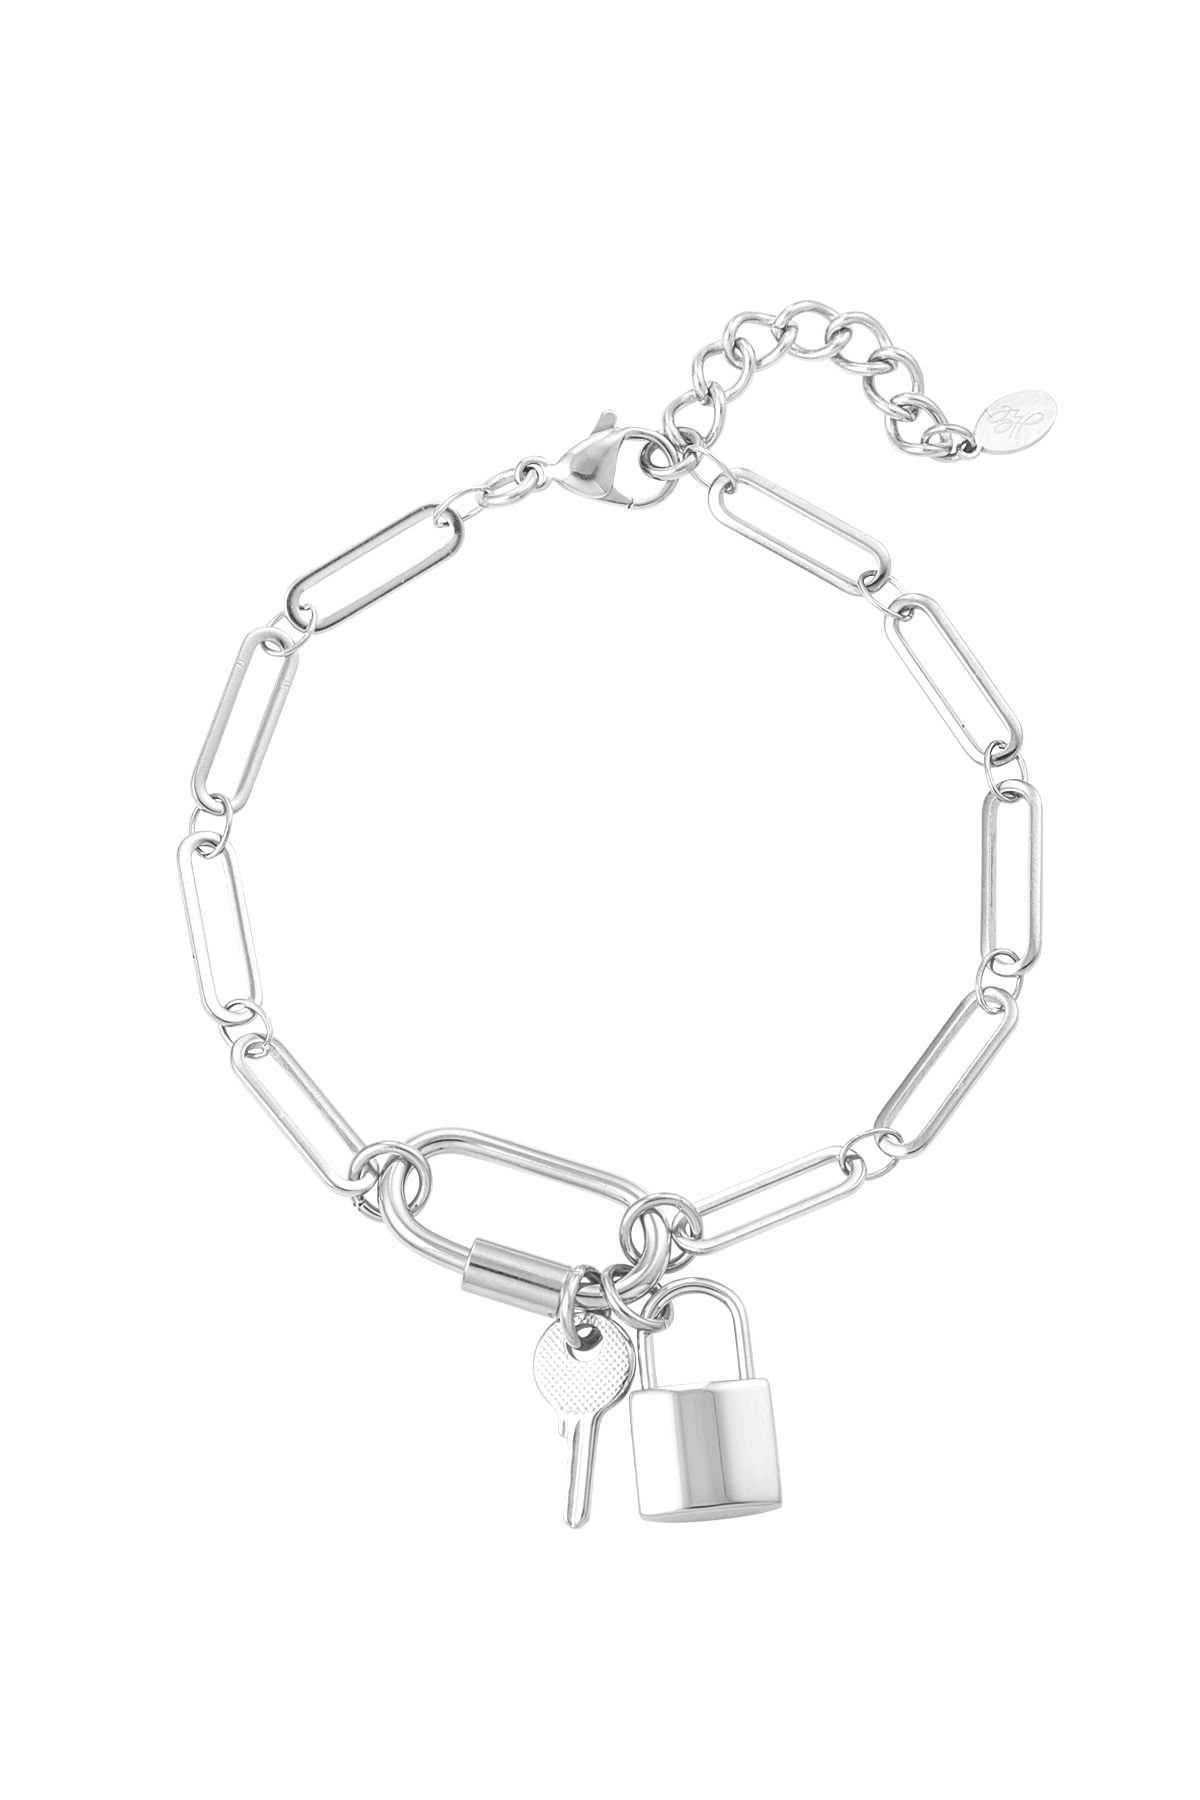 Bracelet links key & lock - silver h5 